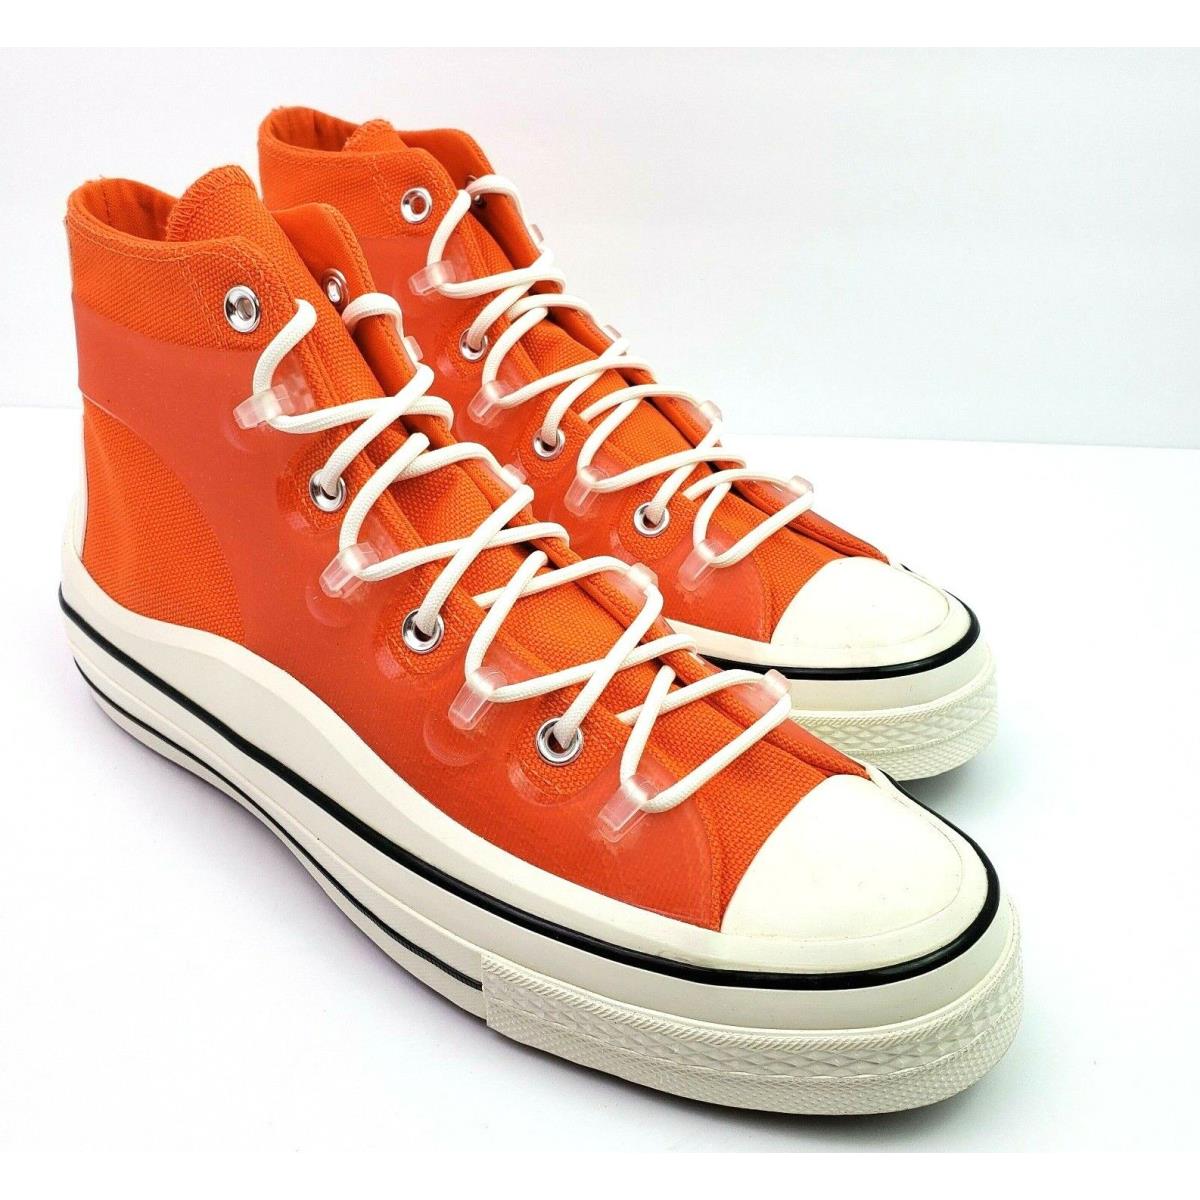 Converse Chuck 70 Utility Hi Mens Size 10 Wms 12 Orange Sneaker Shoes 172254C